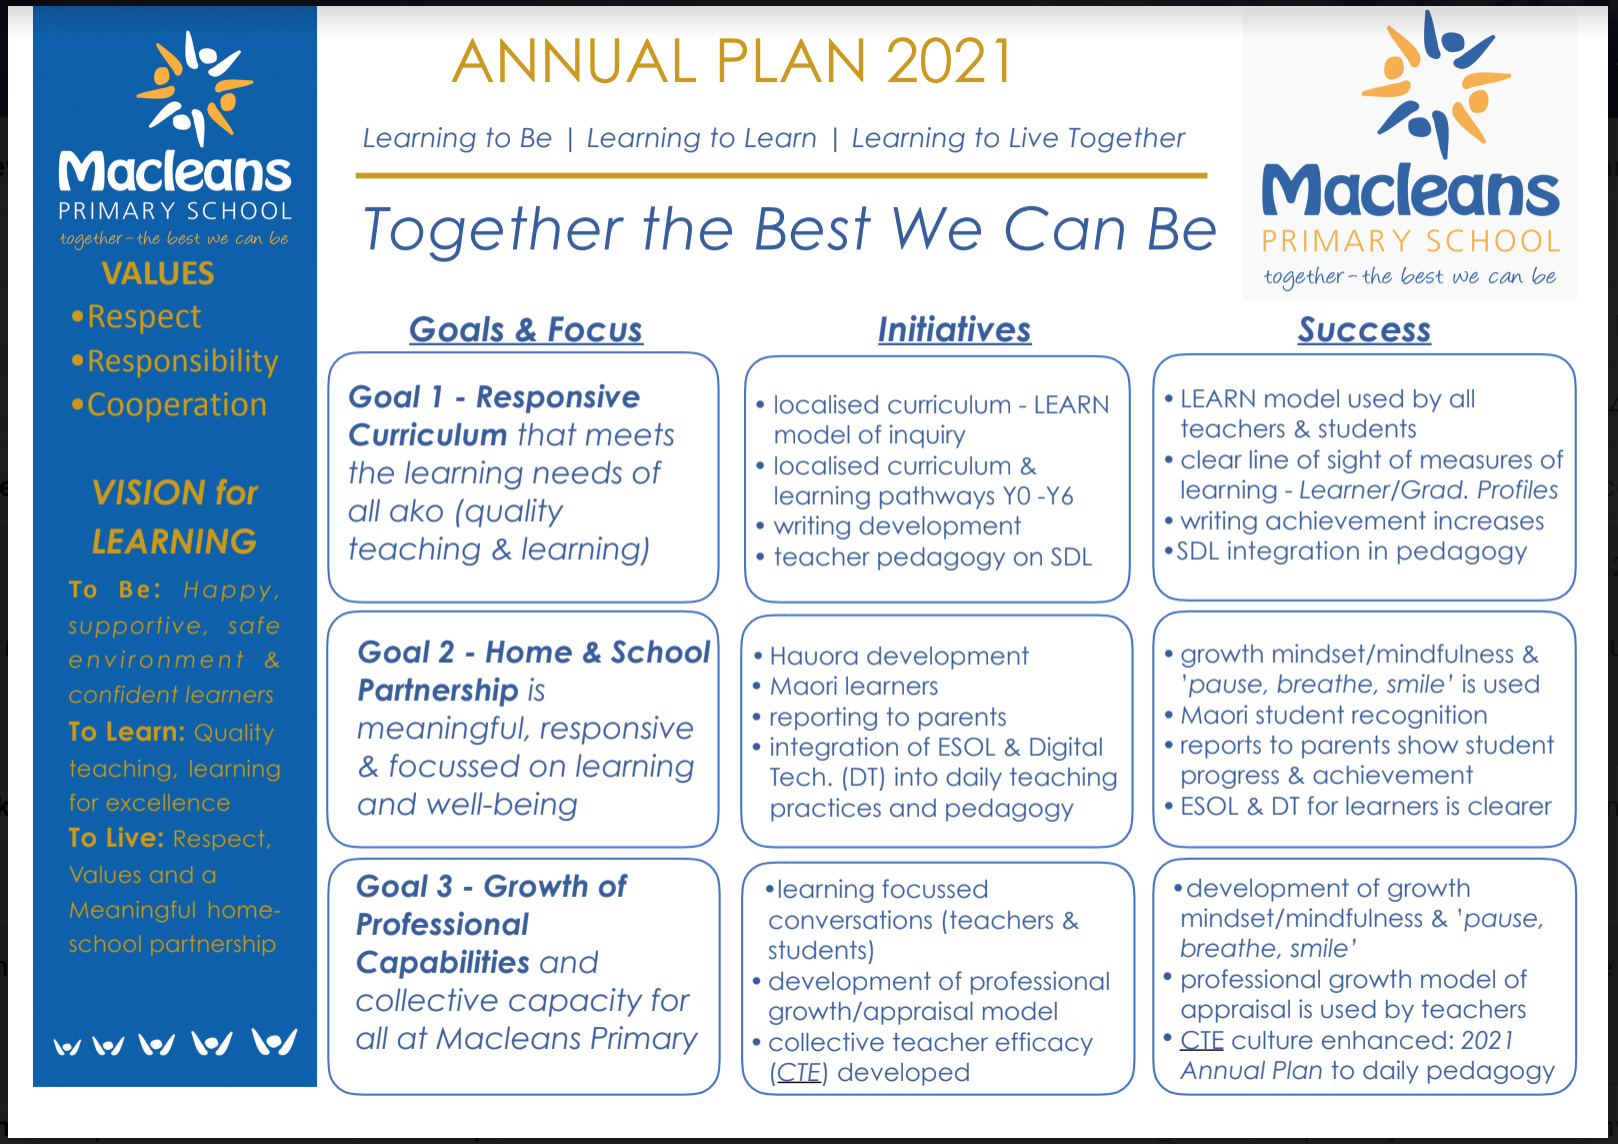 Annual Plan 2021